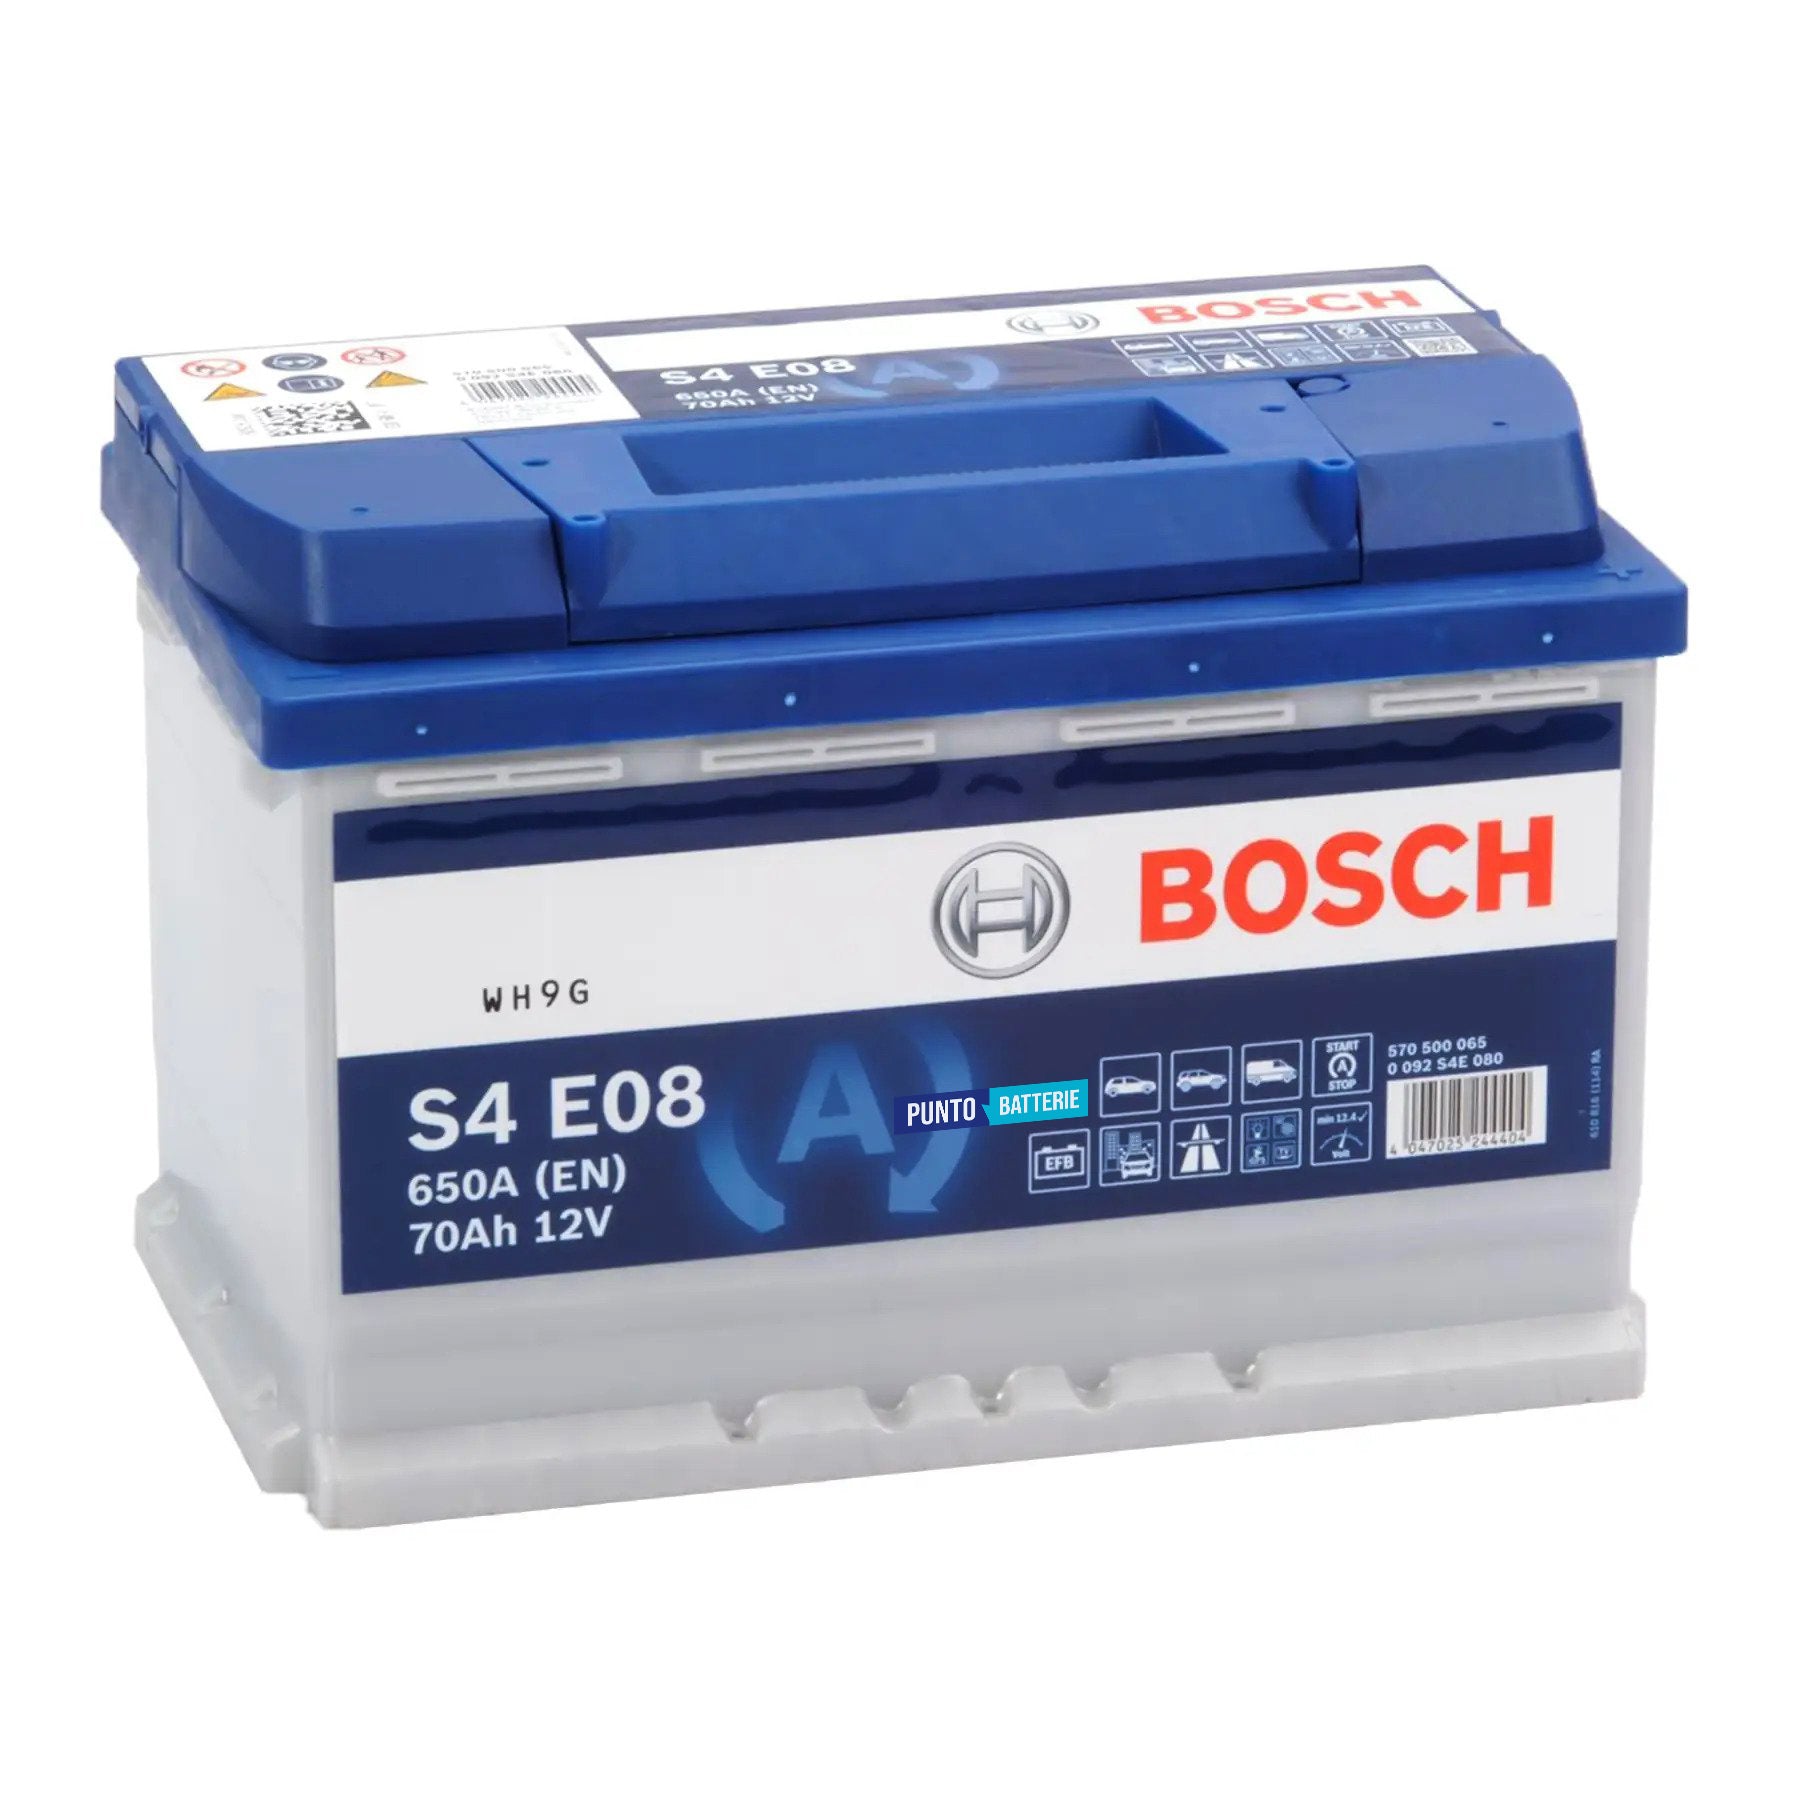 Batteria originale Bosch S4E S4 E08, dimensioni 278 x 175 x 190, polo positivo a destra, 12 volt, 70 amperora, 760 ampere, EFB. Batteria per auto e veicoli leggeri con start e stop.